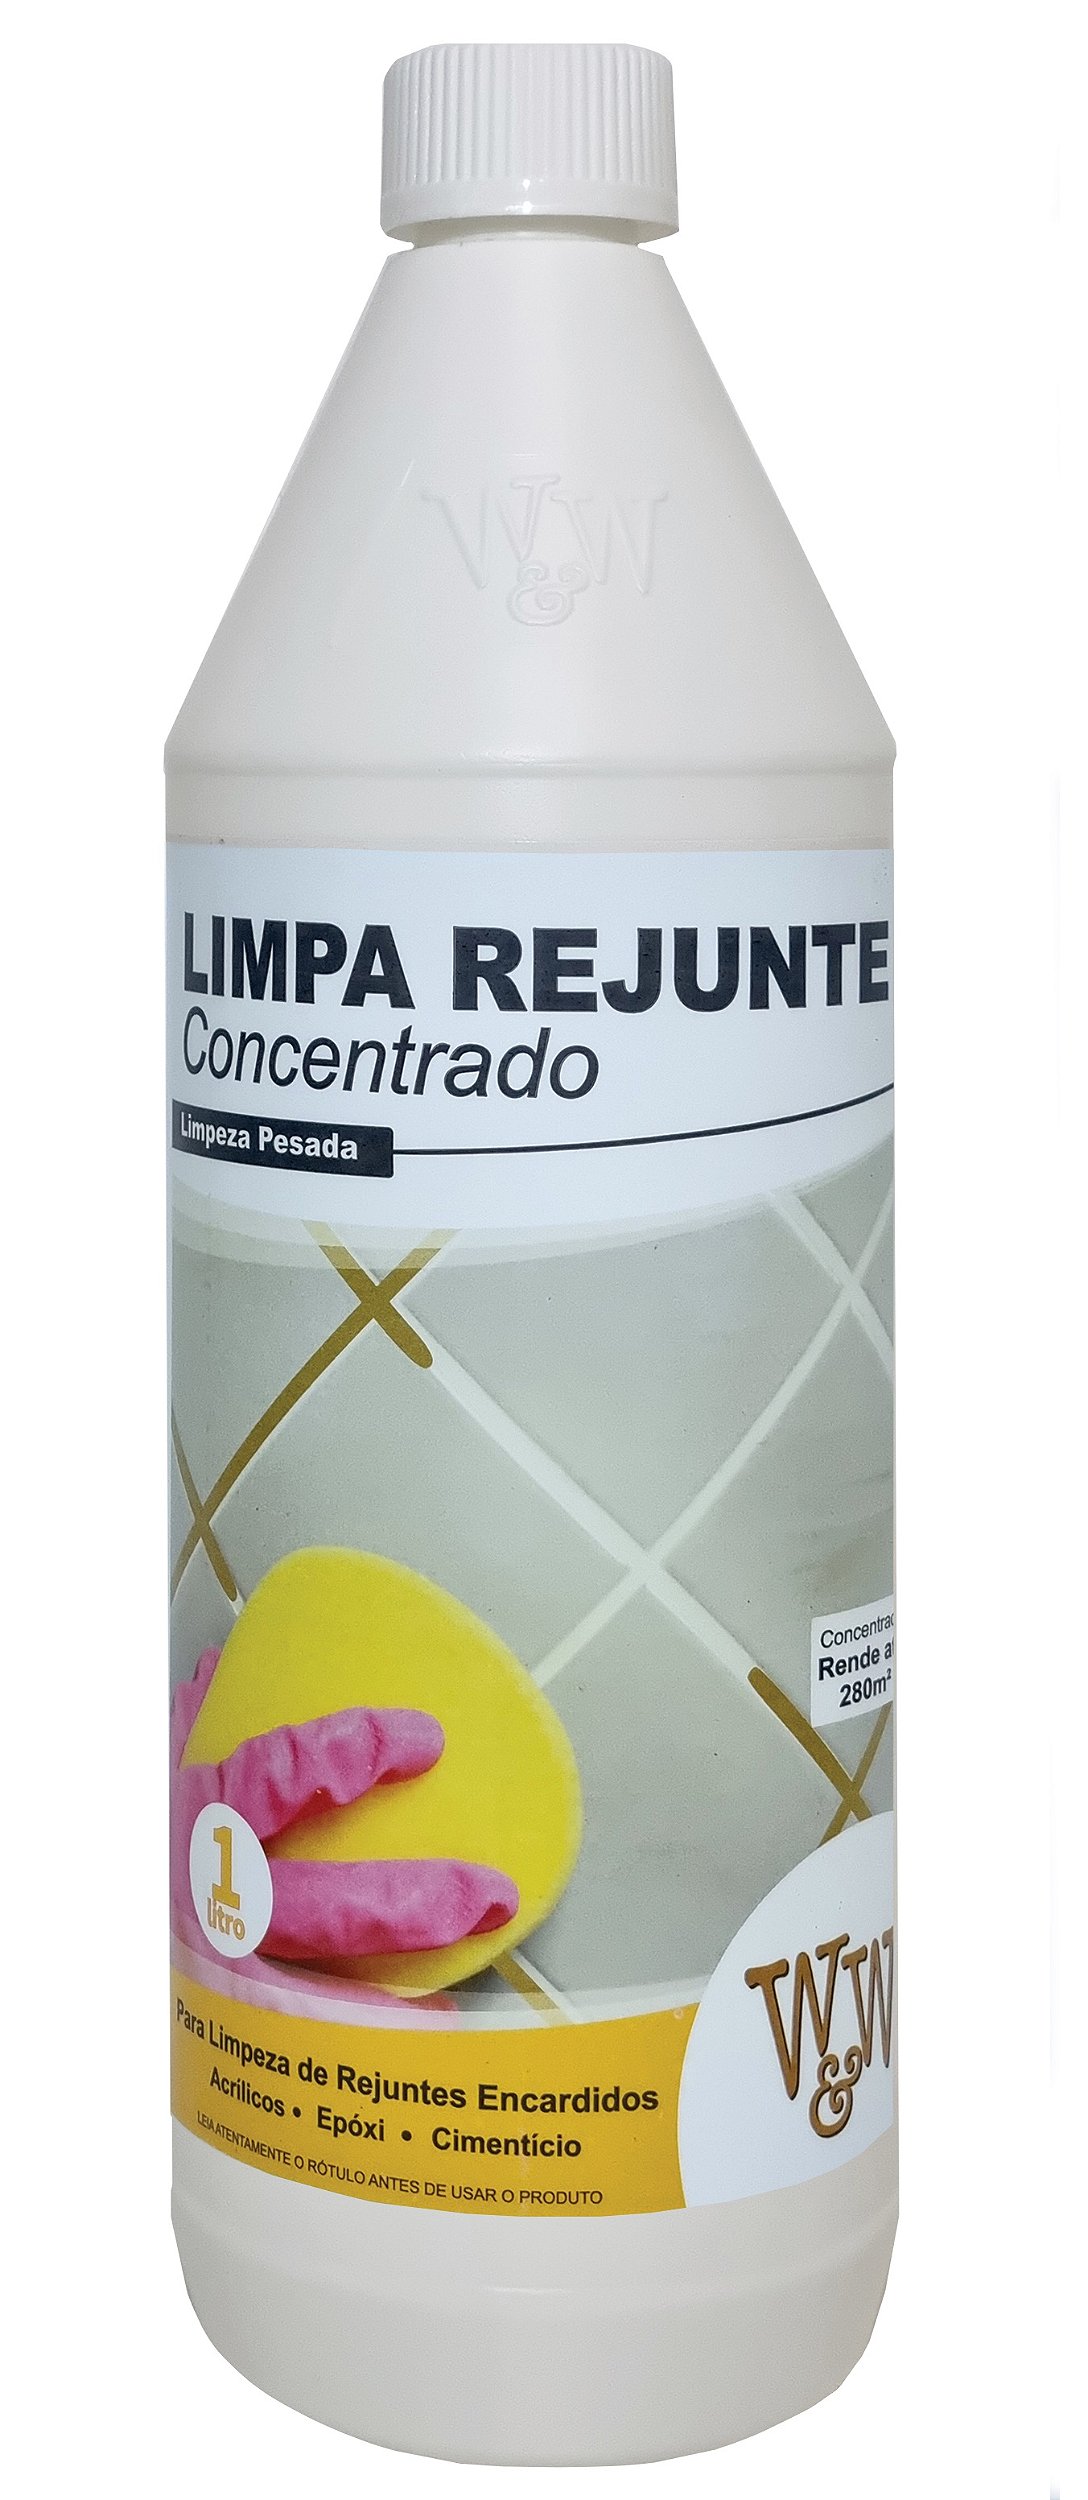 W&W LIMPA REJUNTE CONCENTRADO 1L - Casa Limpa Produtos de Limpeza